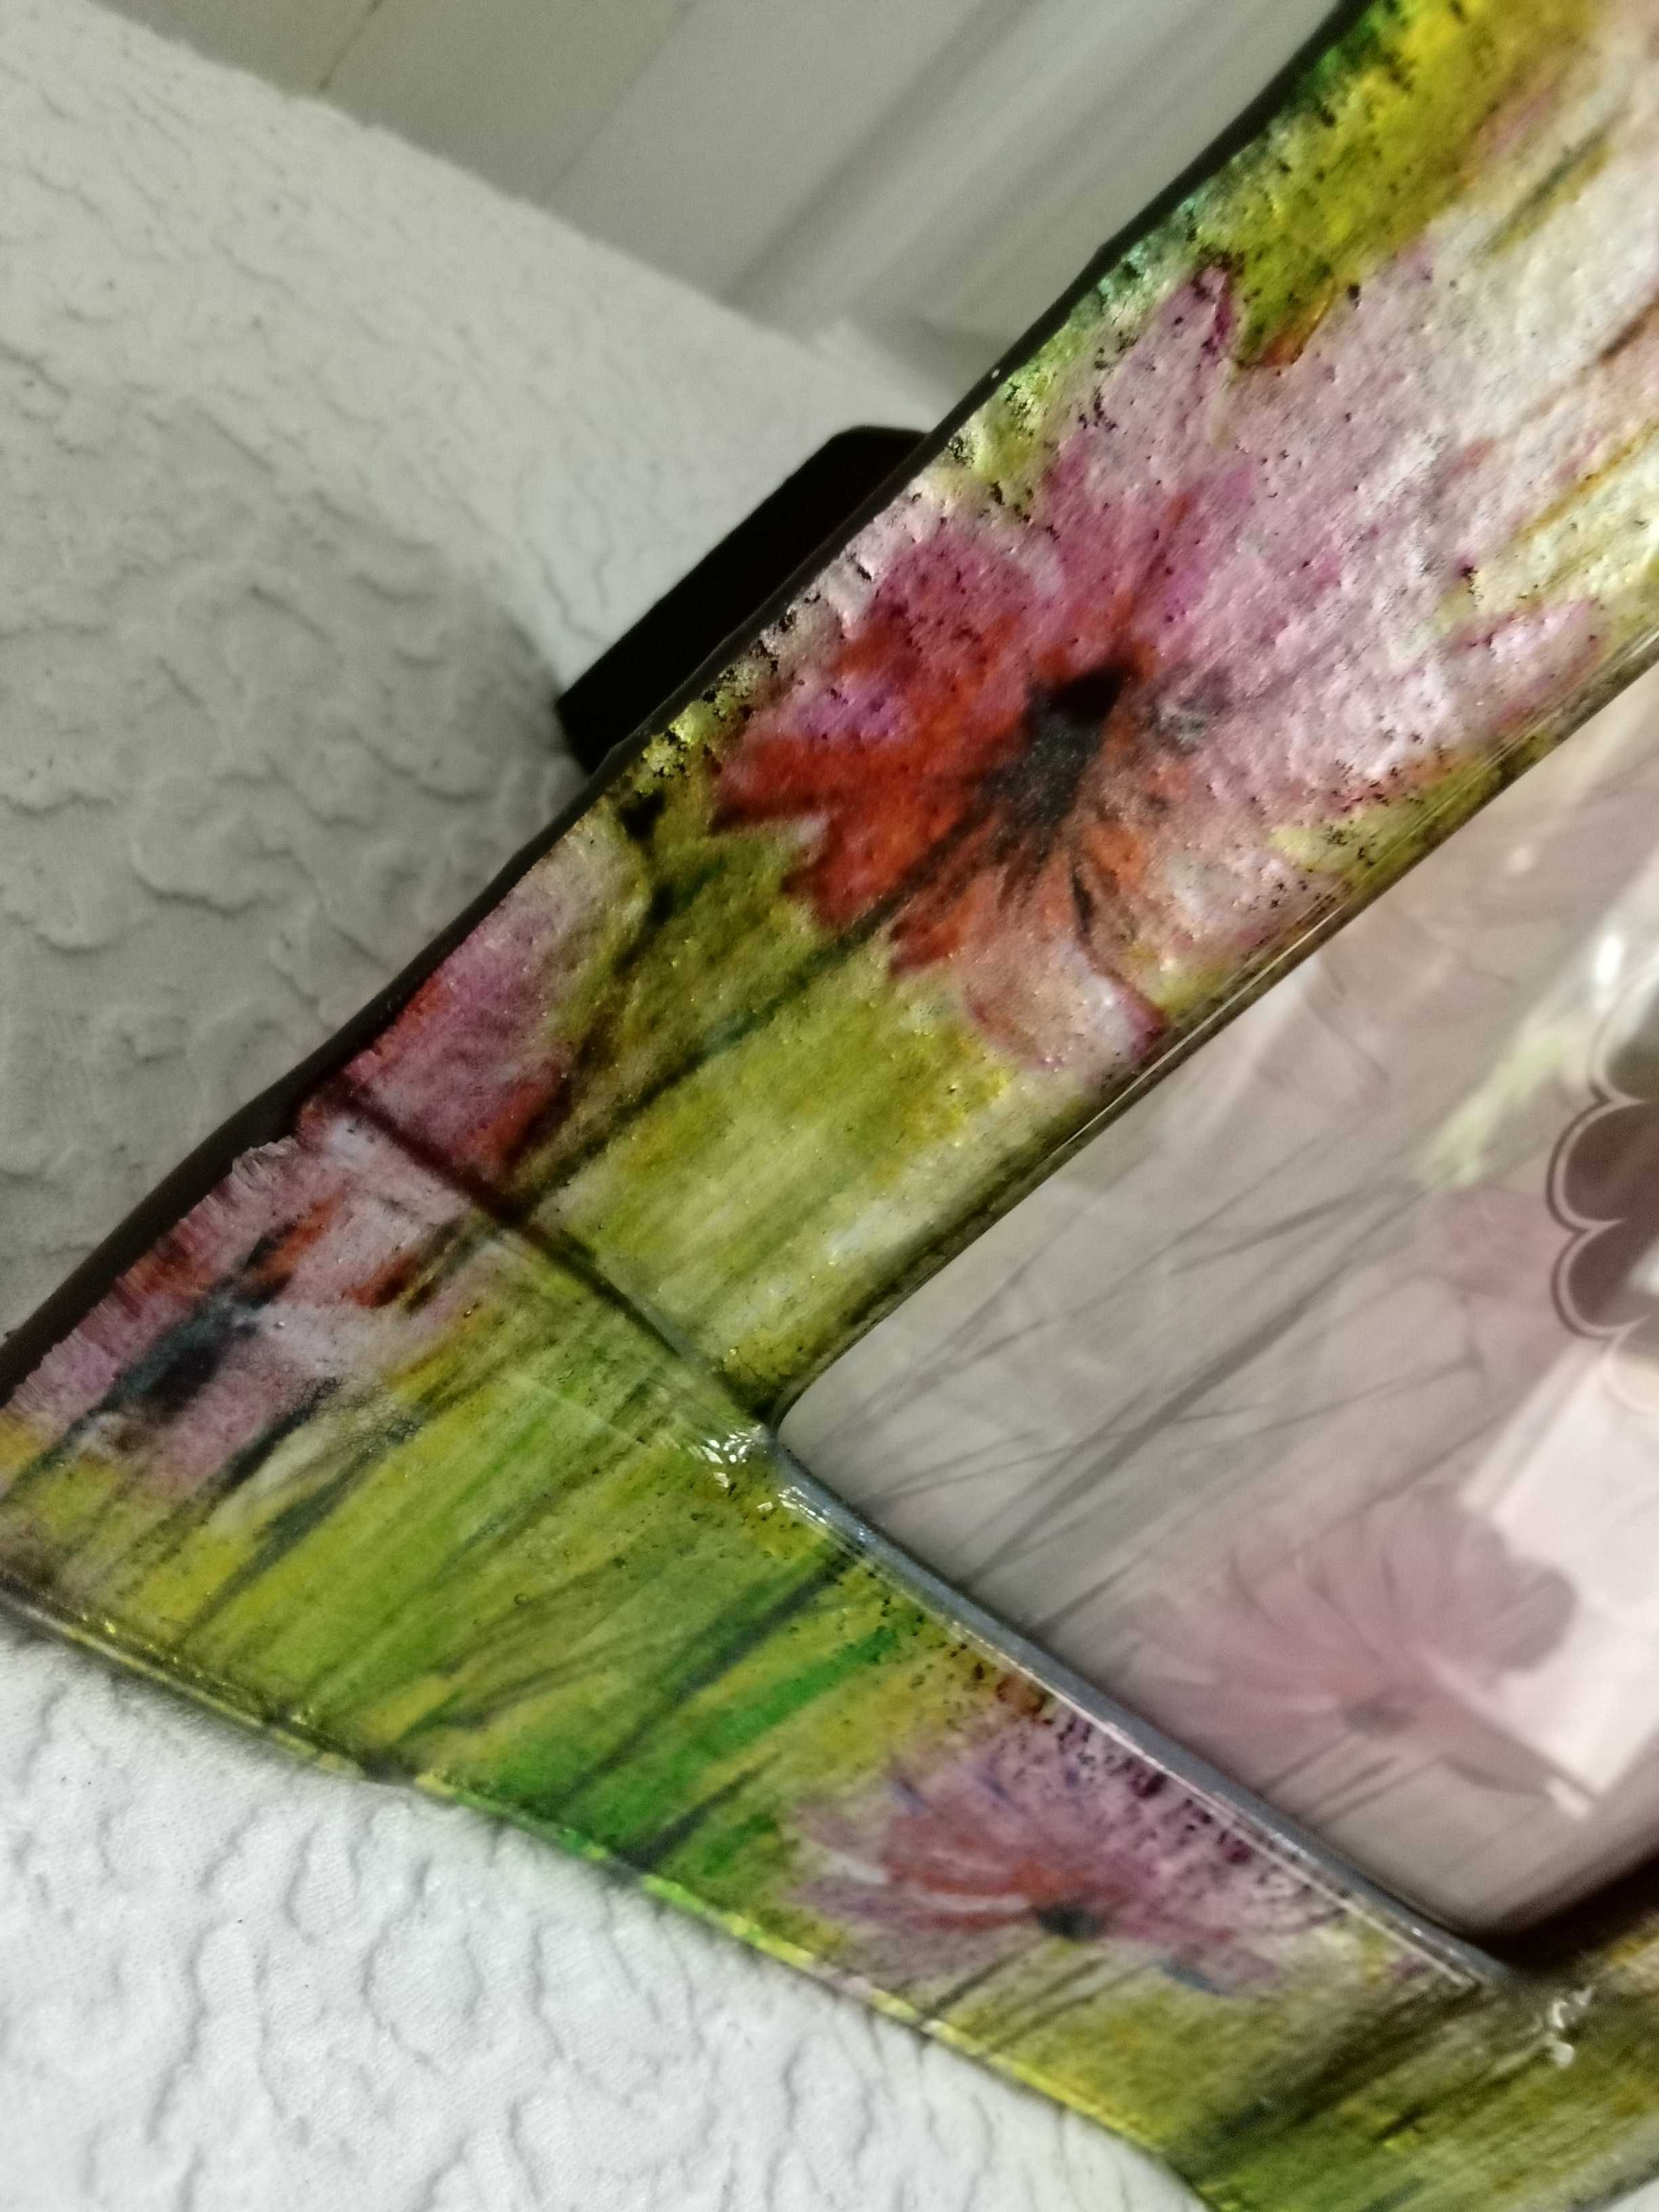 Piękna ramka na zdjęcie 10 na 15 różowo-zielona szklana ozdobna